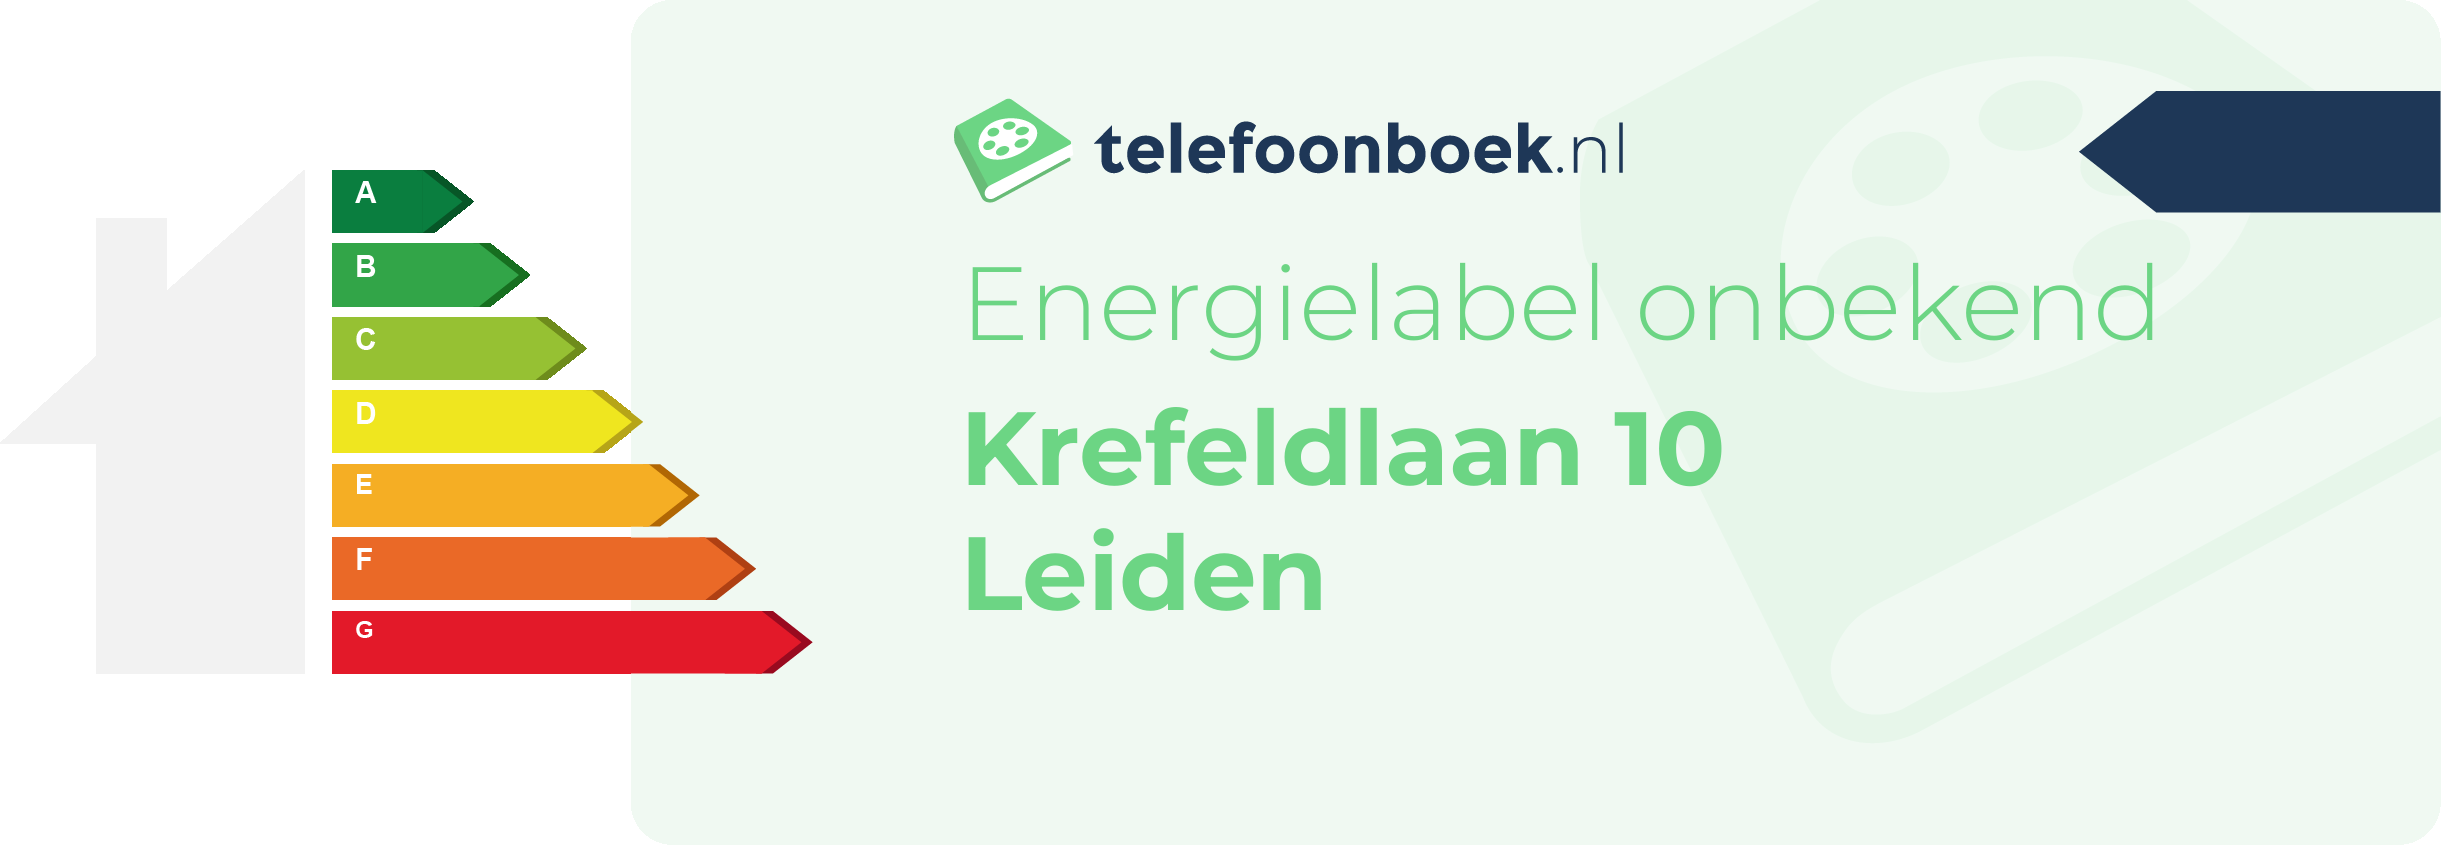 Energielabel Krefeldlaan 10 Leiden